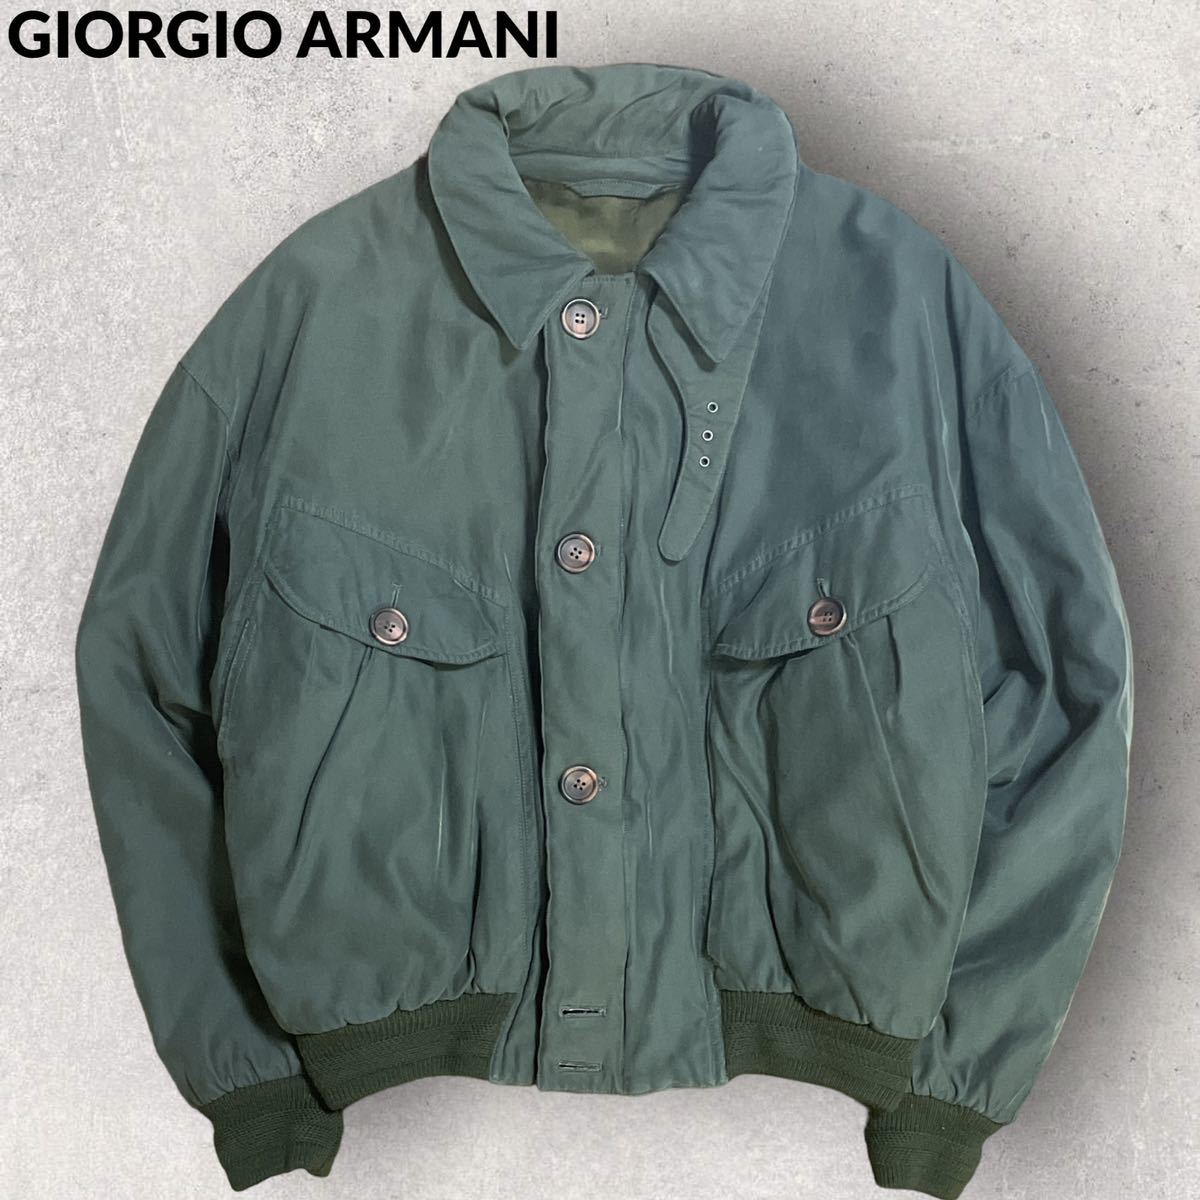 GIORGIO ARMANI アルマーニ イタリア製 アーカイブ ボンバージャケット ジップブルゾン サイズ46